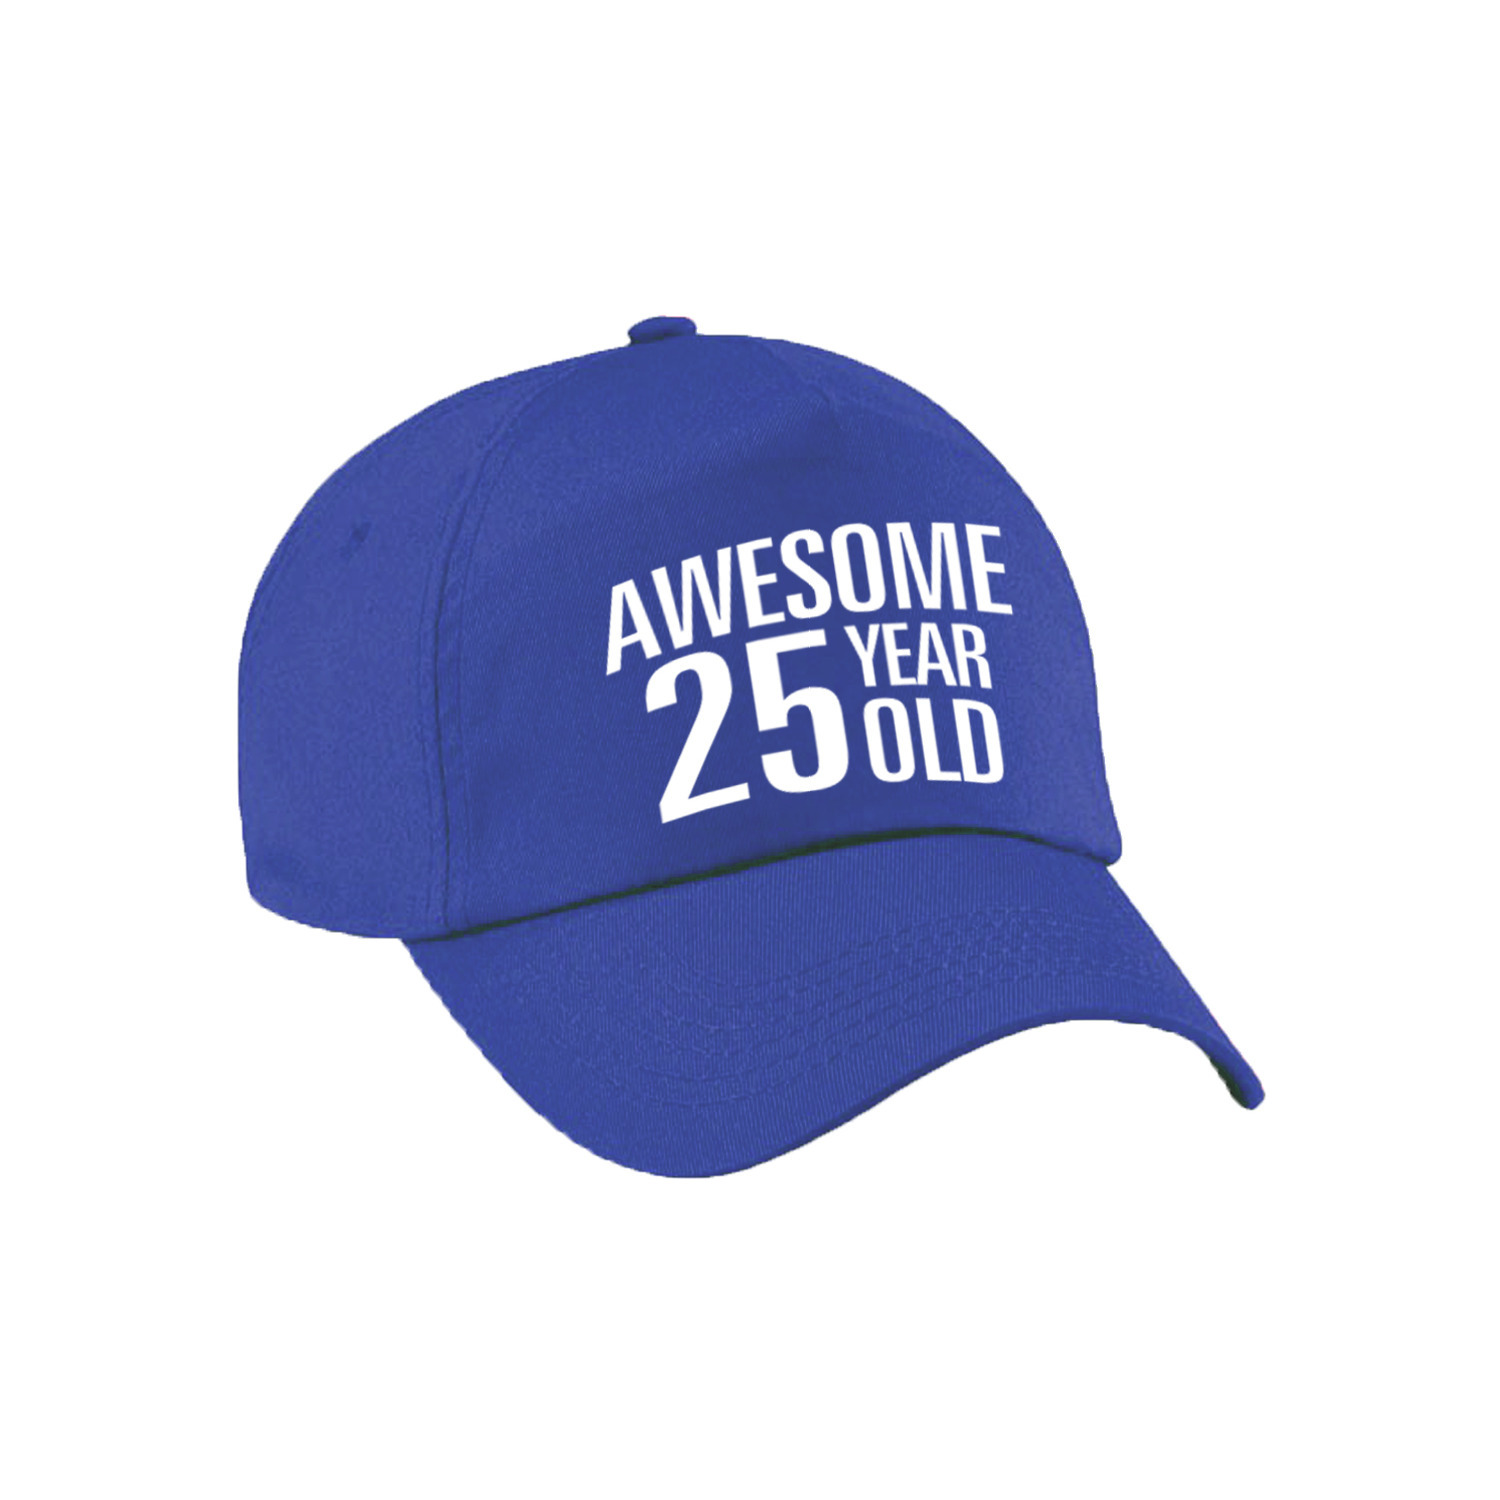 Awesome 25 year old verjaardag pet / cap blauw voor dames en heren